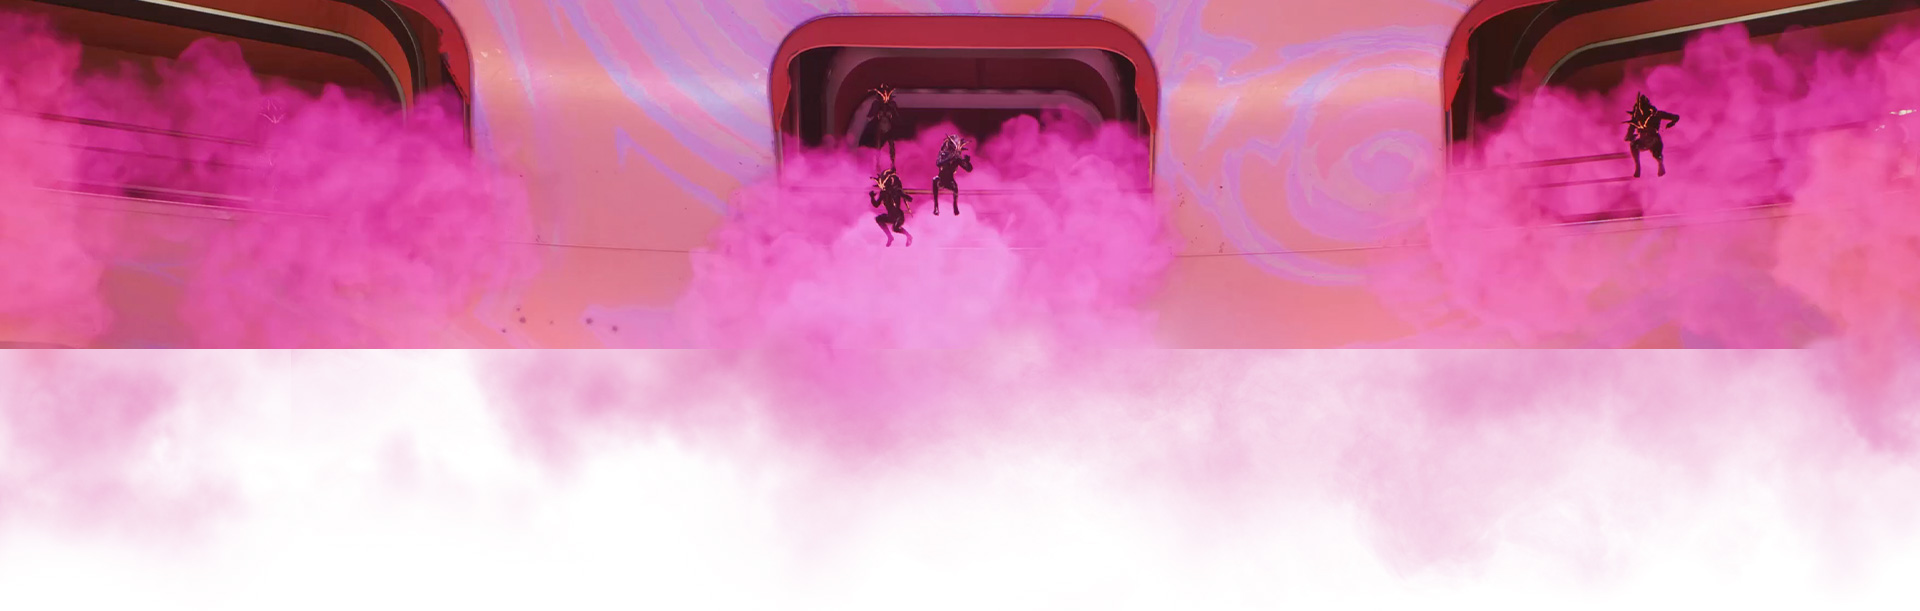 Ένα πλήρωμα πηδά από ένα διαστημόπλοιο που περιβάλλεται από ροζ καπνό.